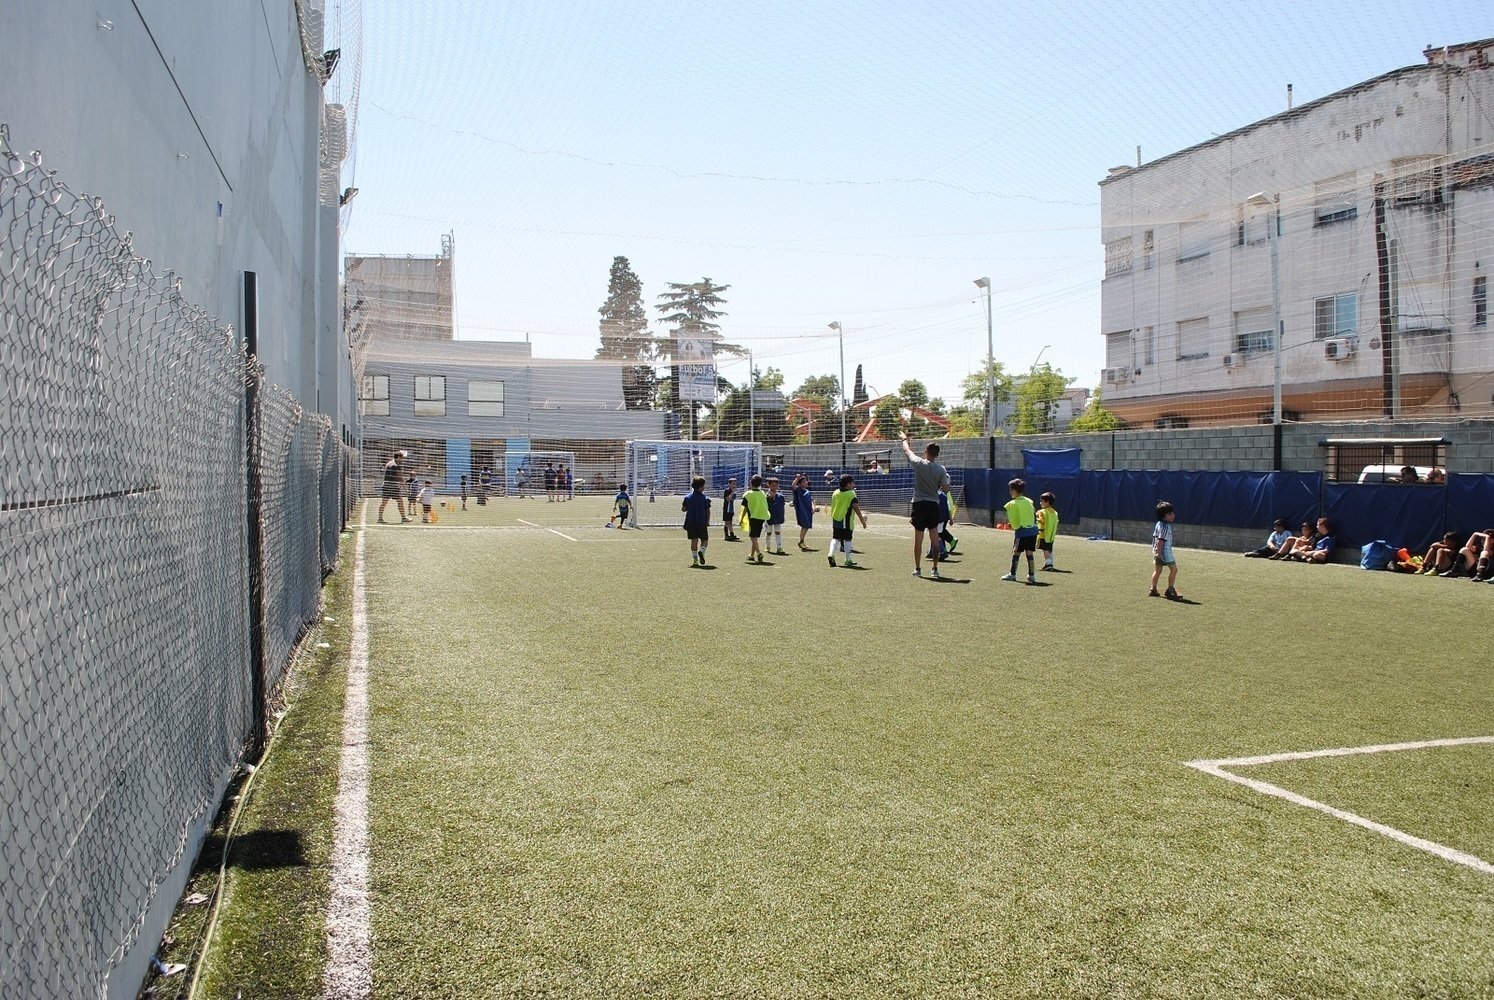 Alquiler cancha en Sáenz Peña: Complejo Deportivo Fortius |   | Hoy se juega fútbol!